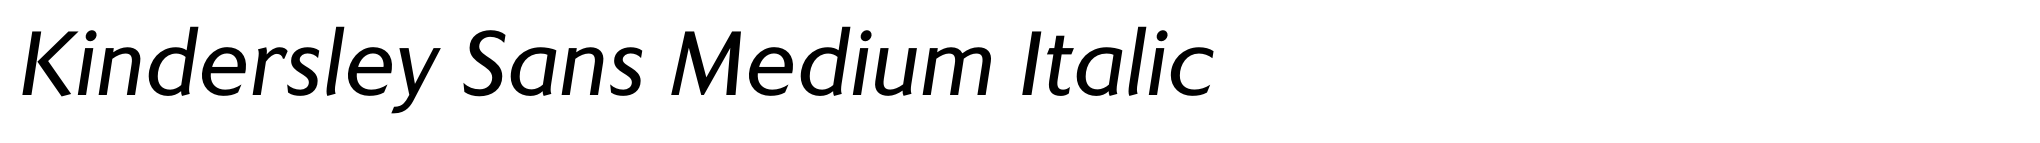 Kindersley Sans Medium Italic image